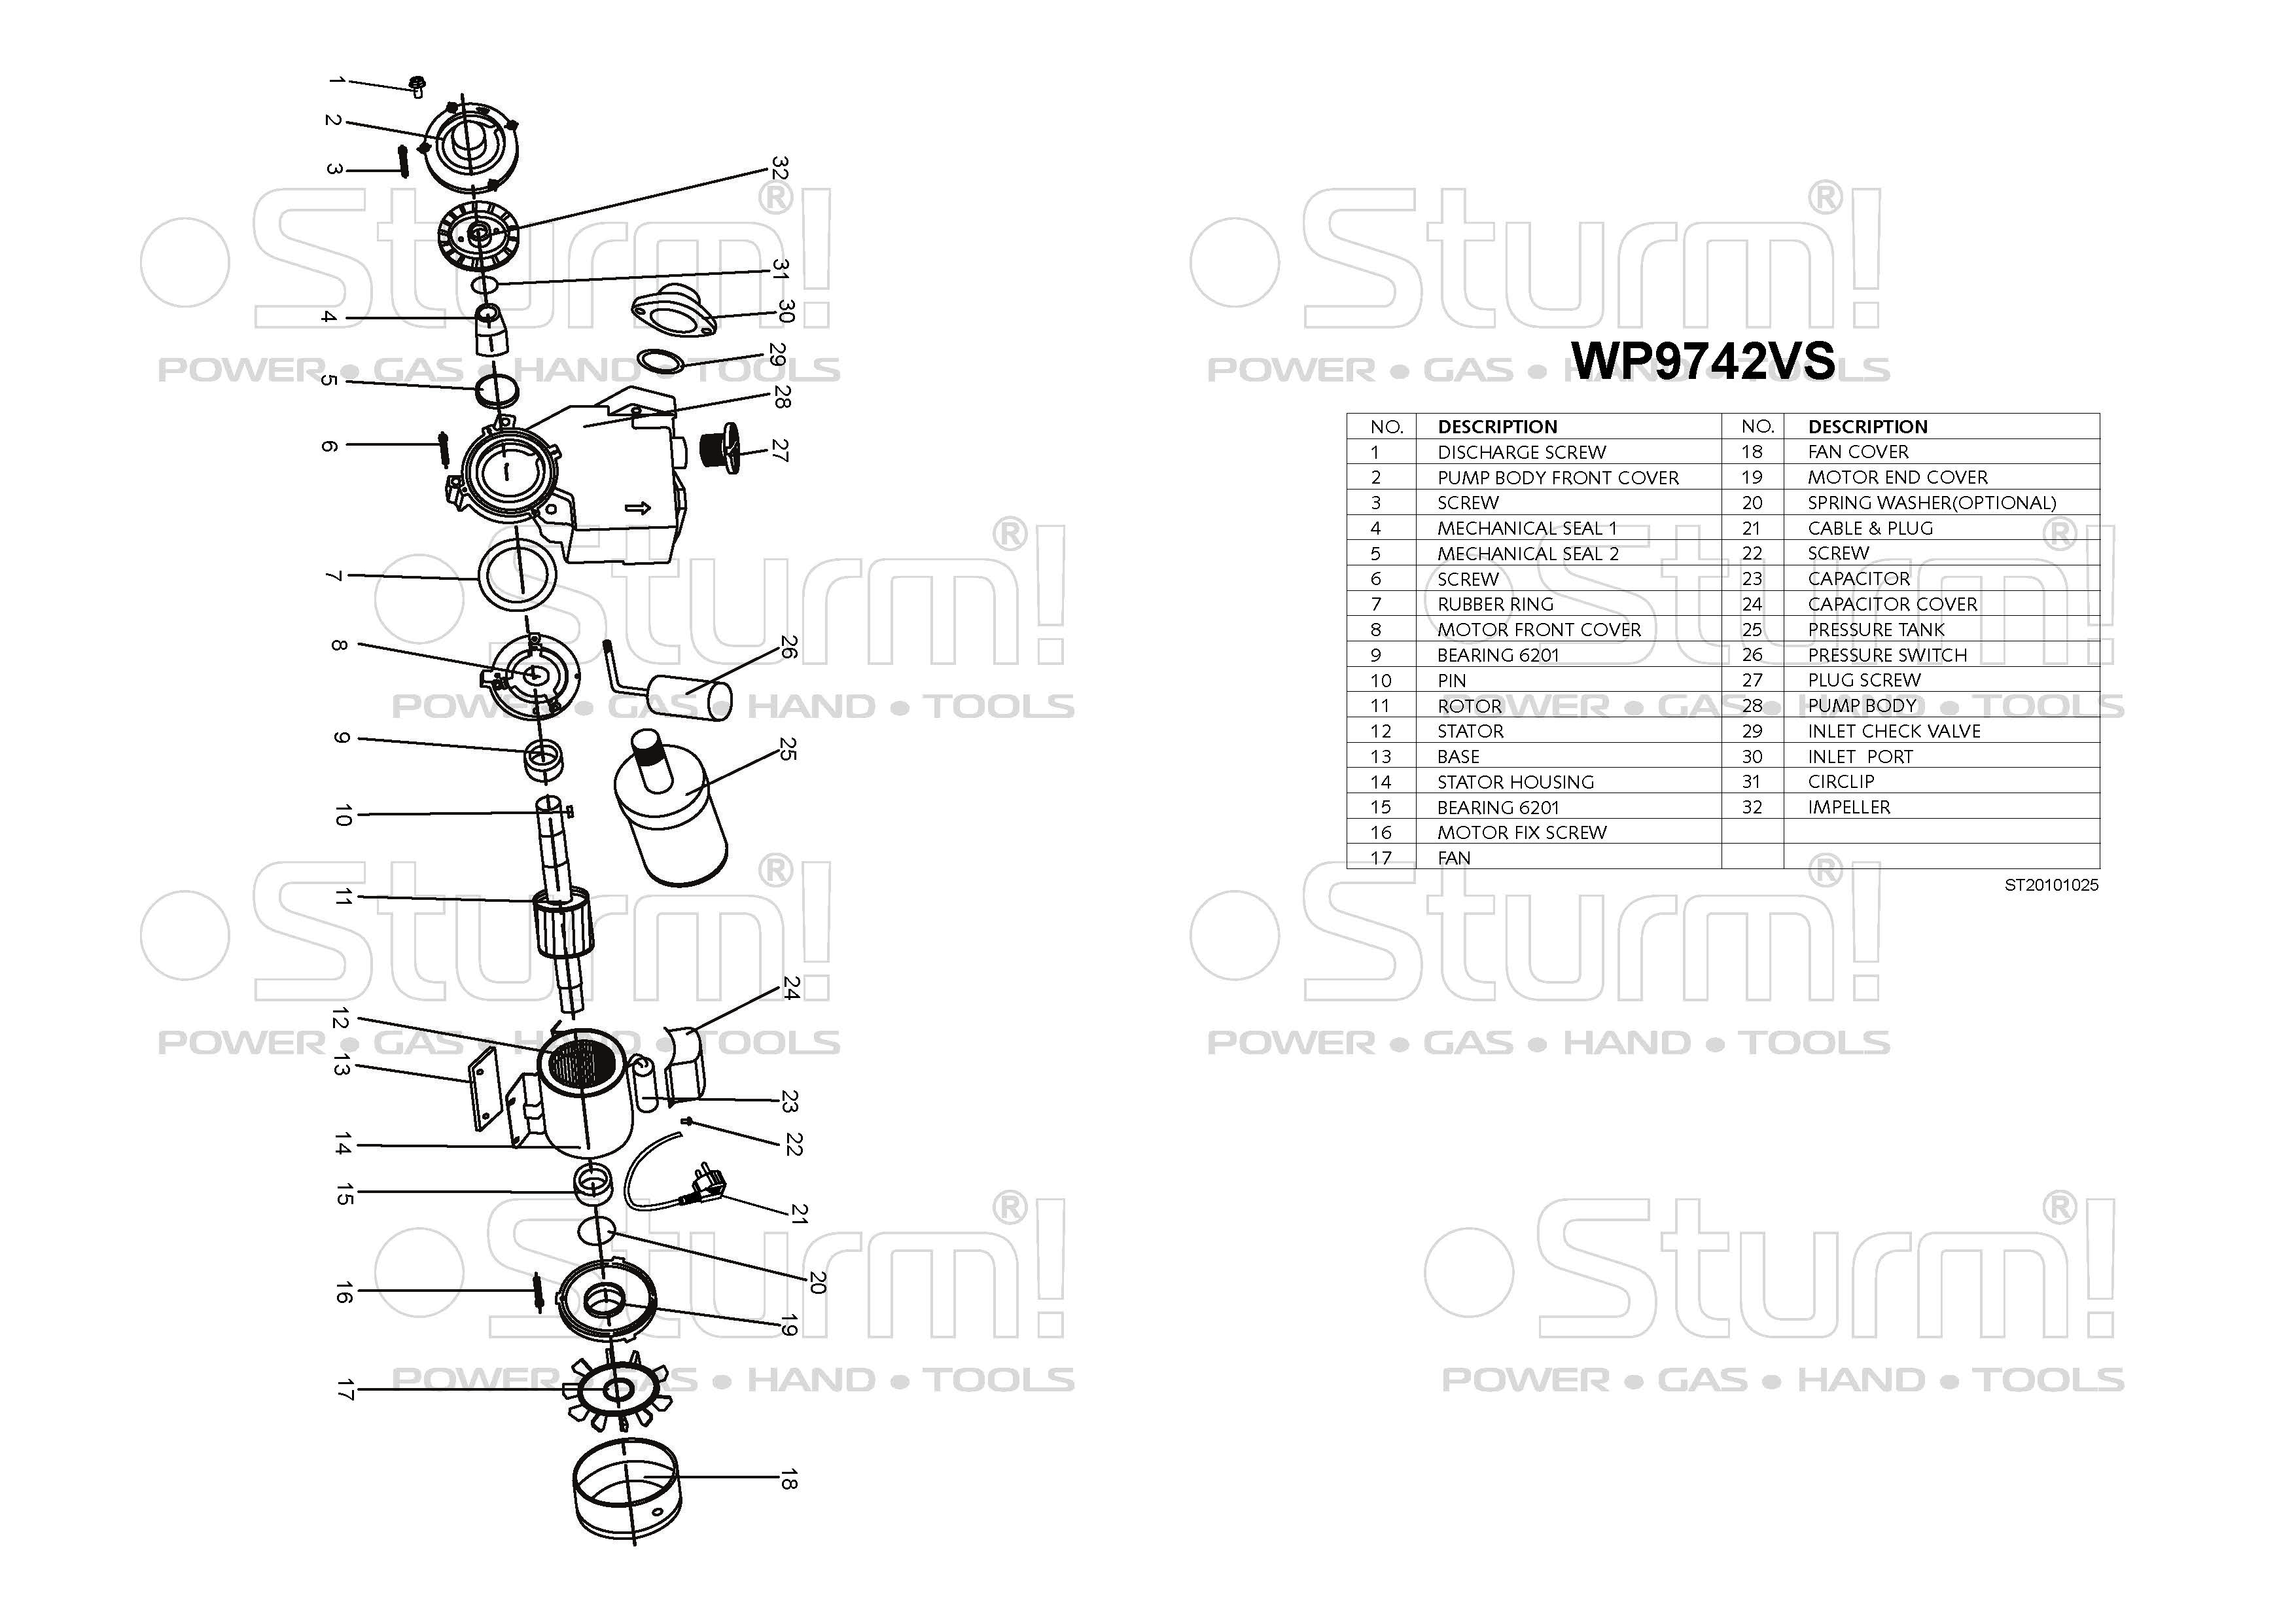  станция Sturm! WP9742VS - описание, характеристики, цена .